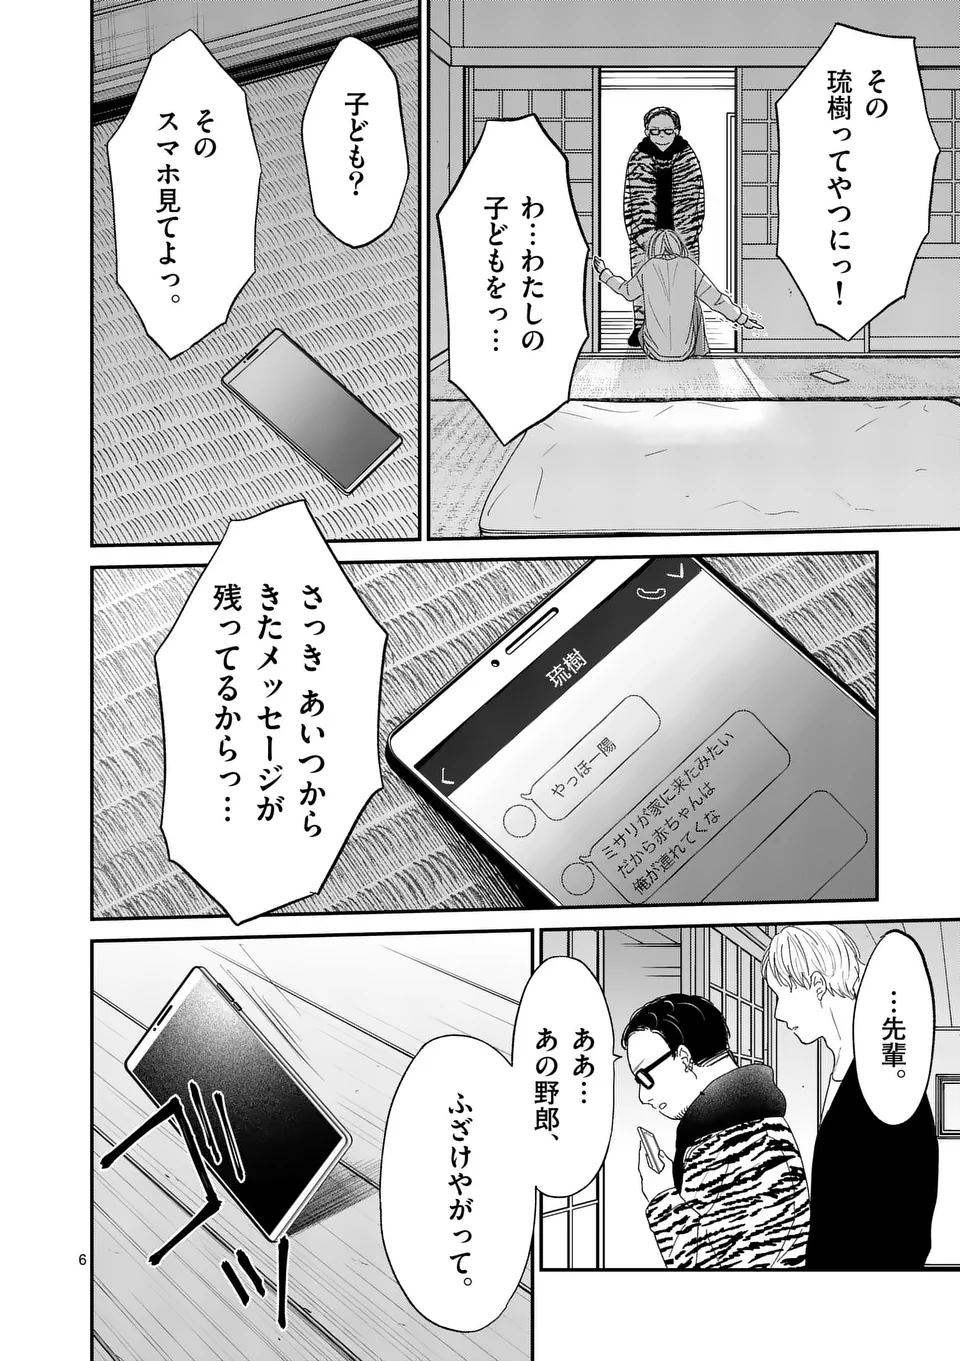 Atashi wo Ijimeta Kanojo no Ko - Chapter 3.1 - Page 6